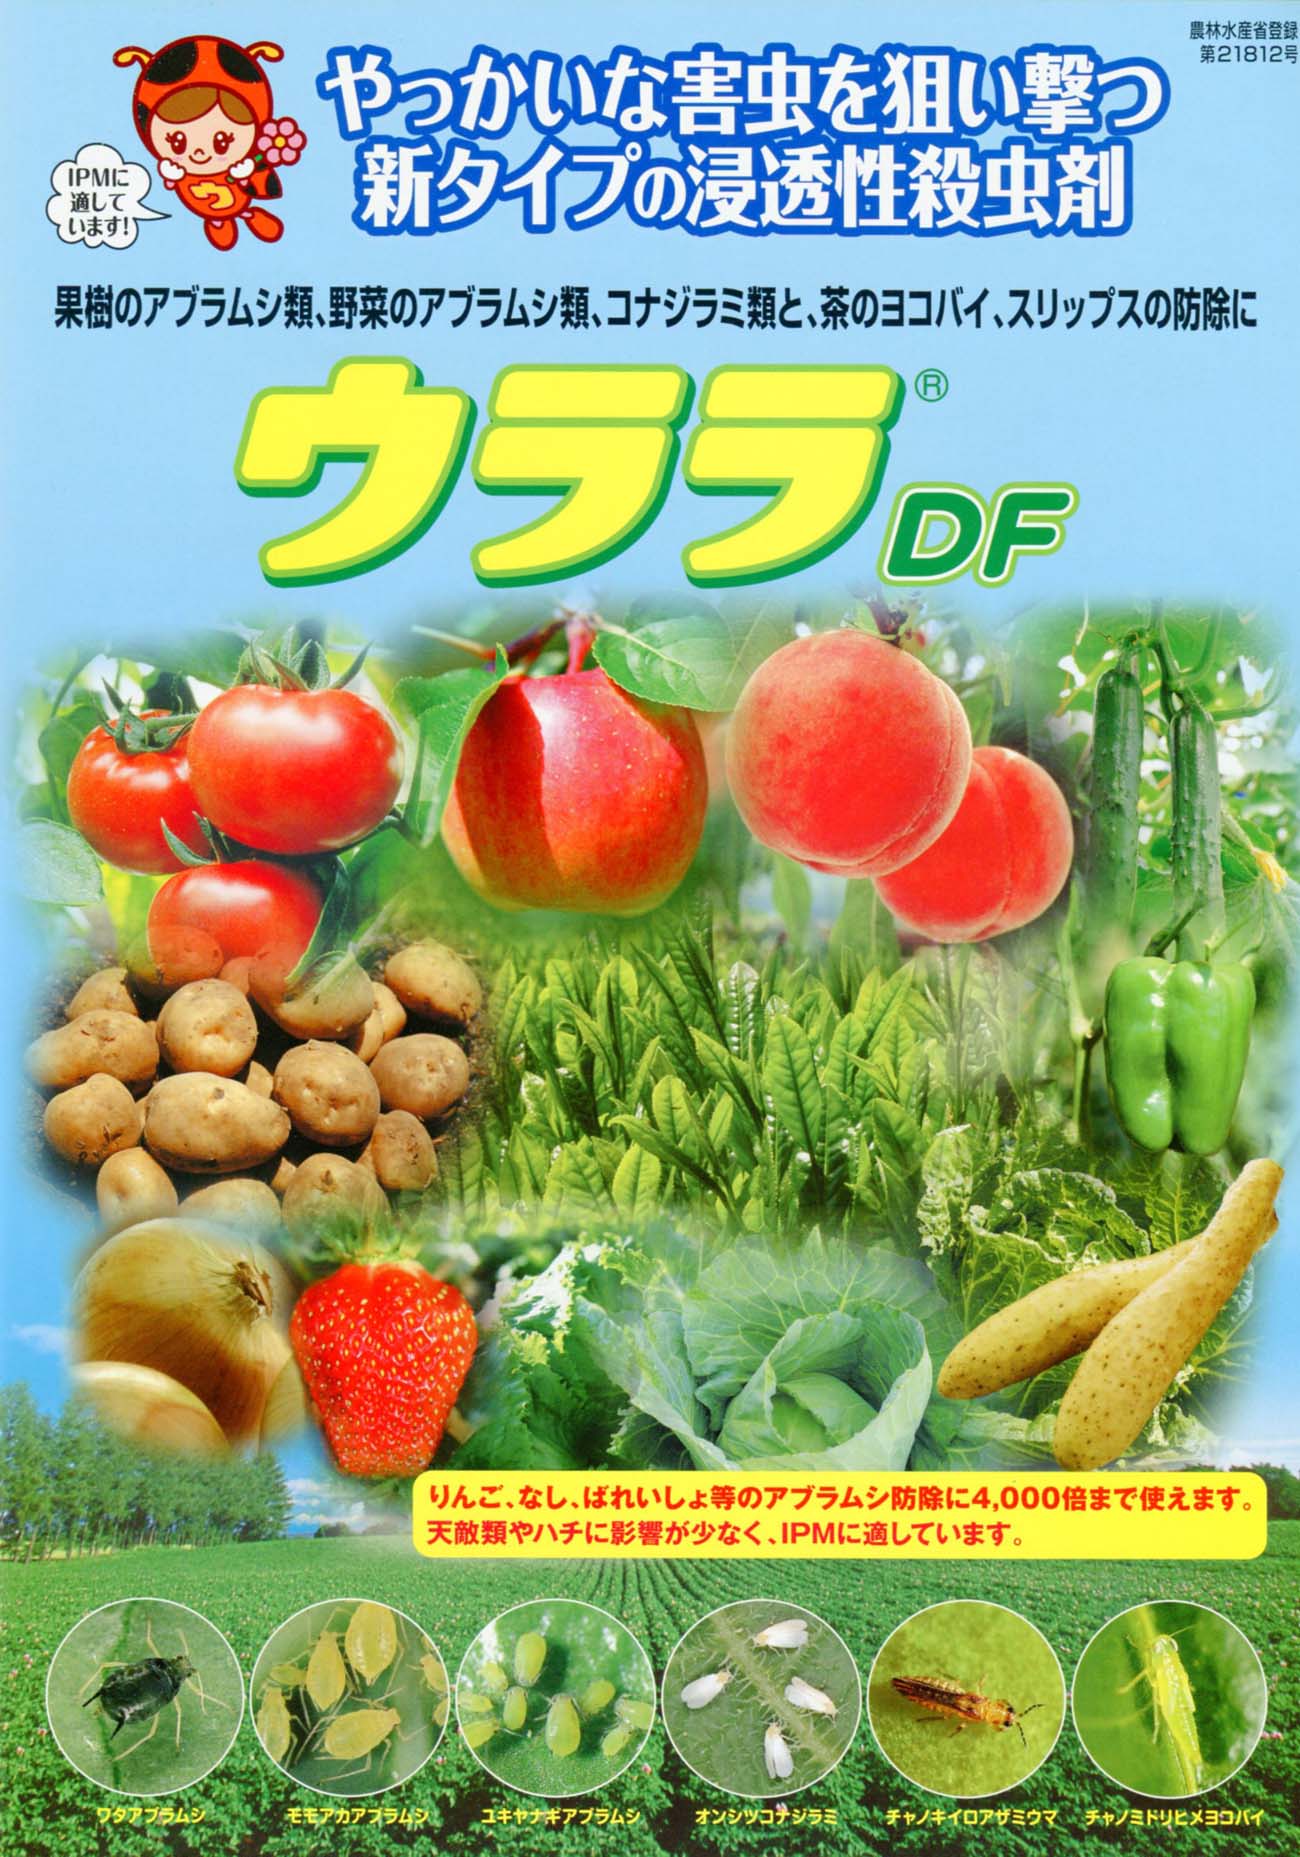 ウララdf 殺虫剤 E 種や 国内最大級の野菜種 花種 苗 農業資材の販売店